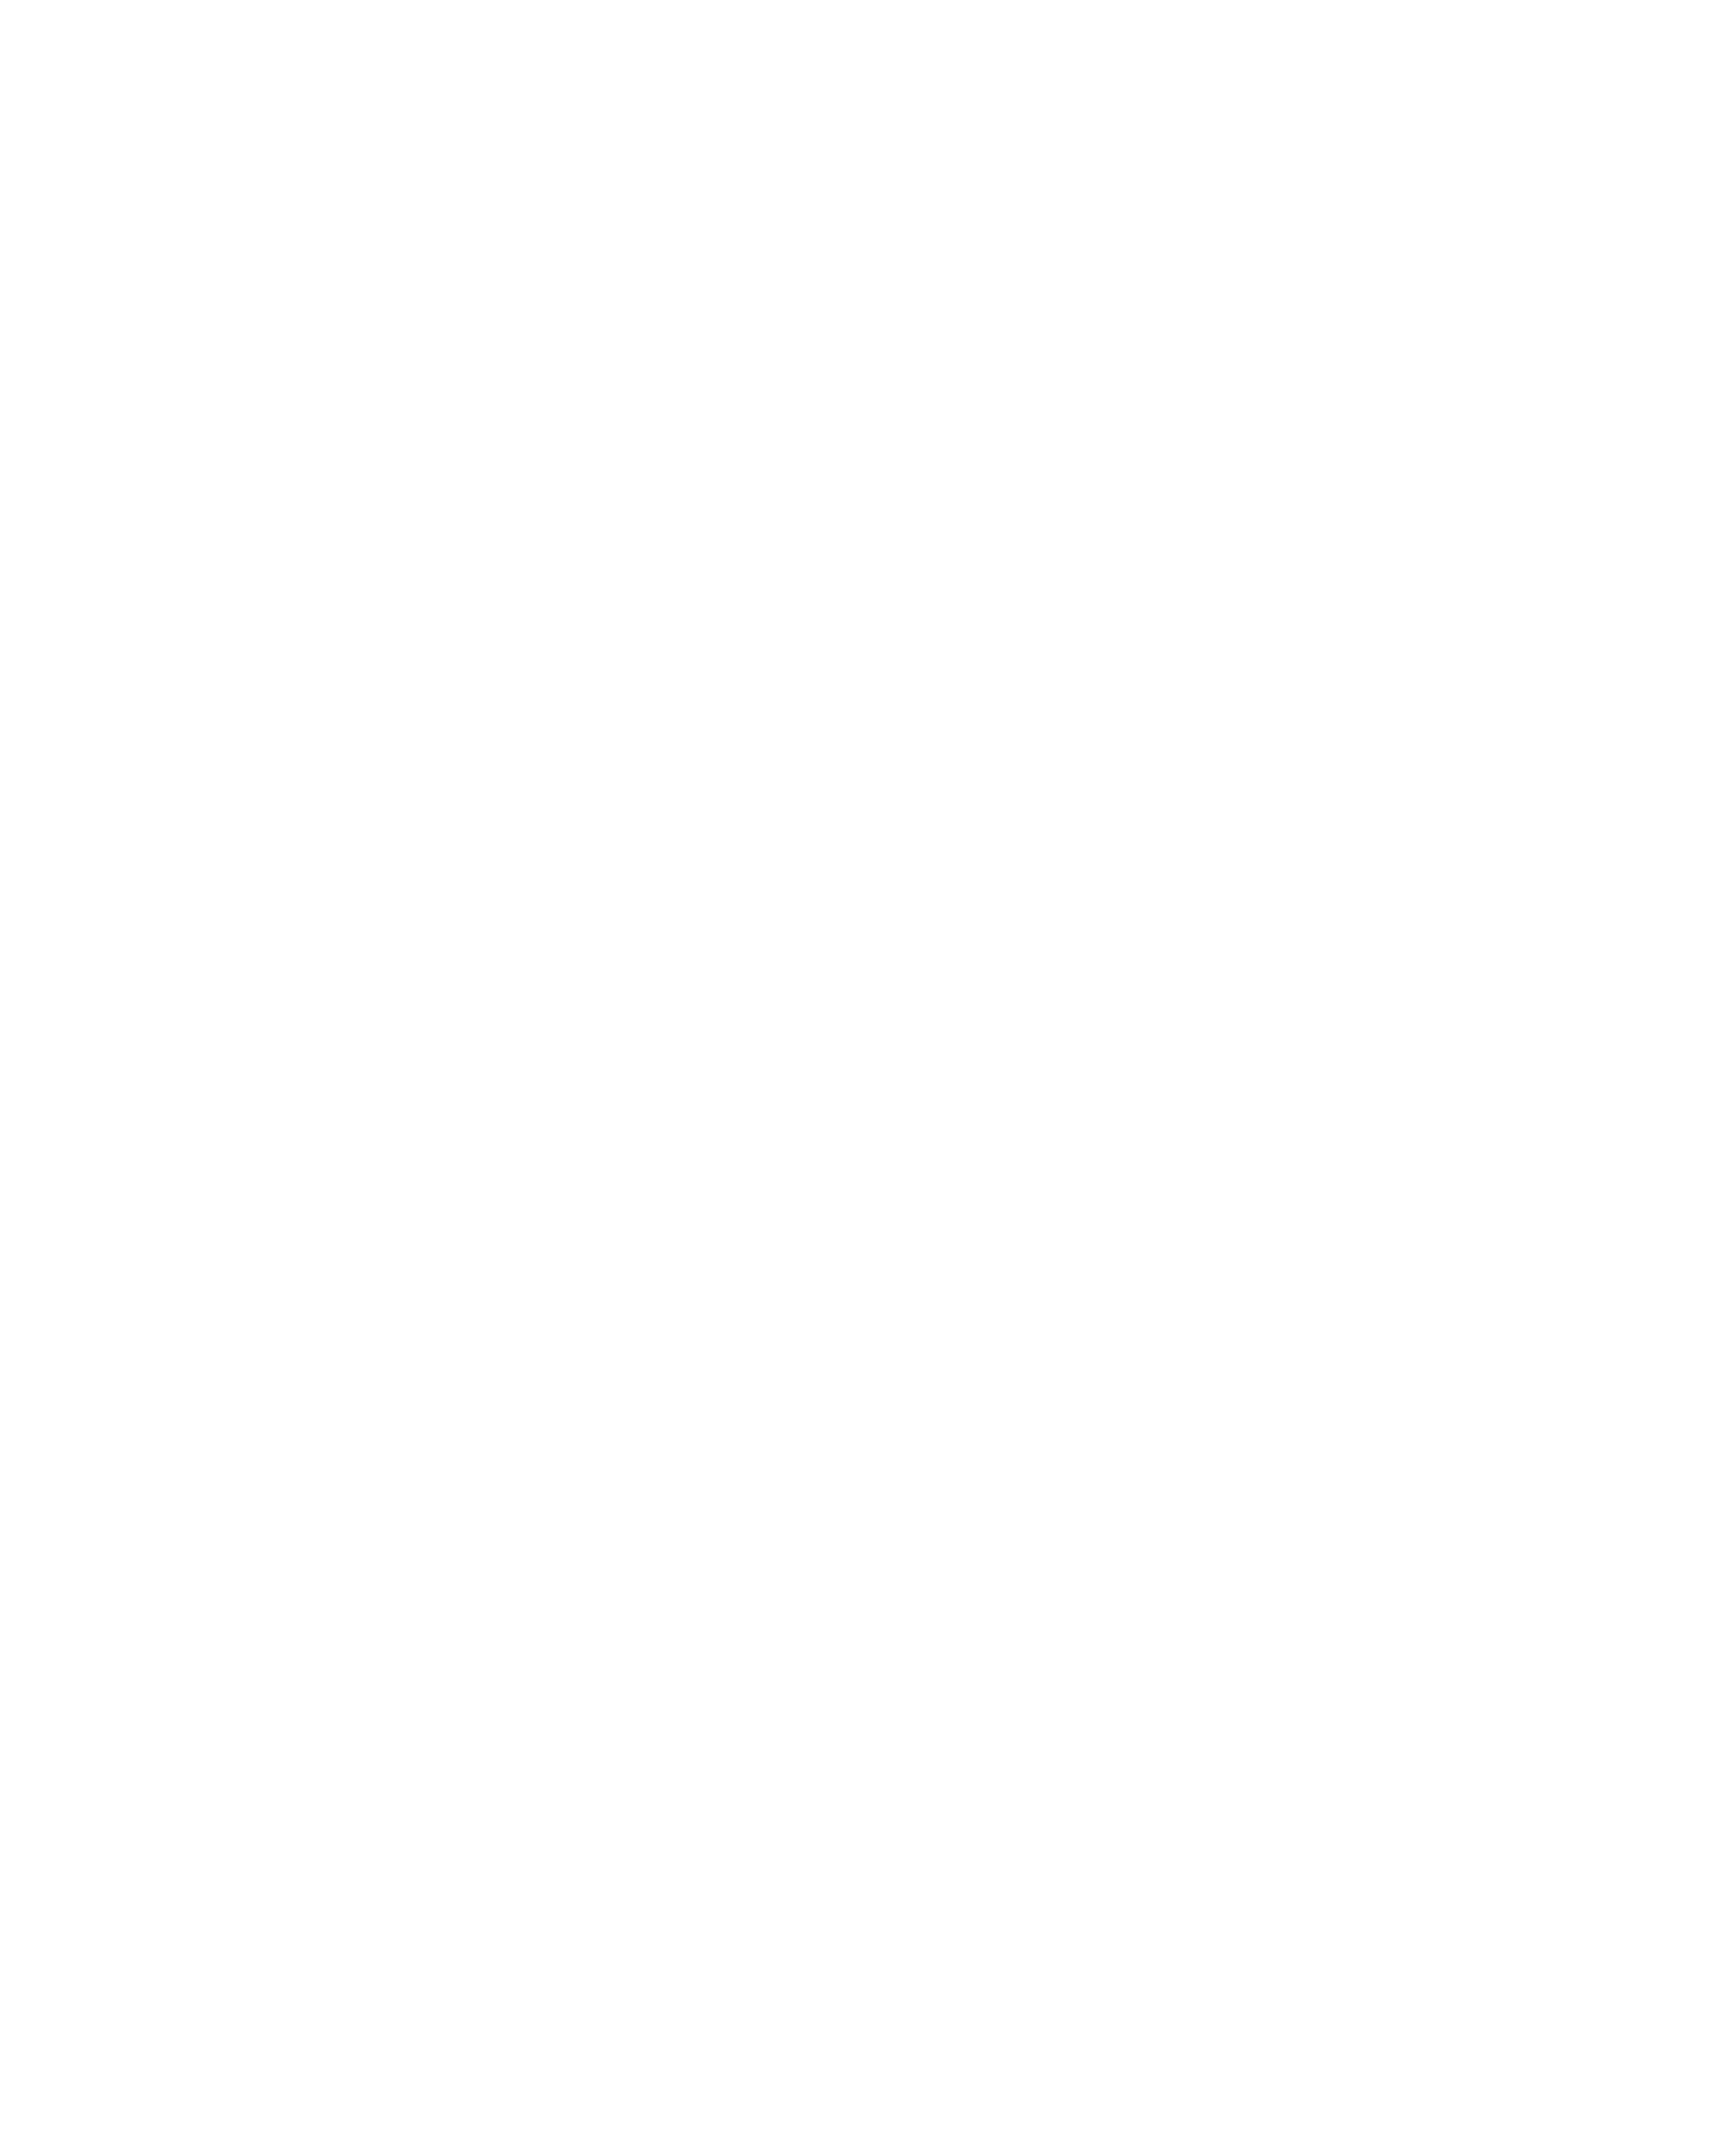 KOSHU CUVEE SN 甲州キュヴェSN 2022